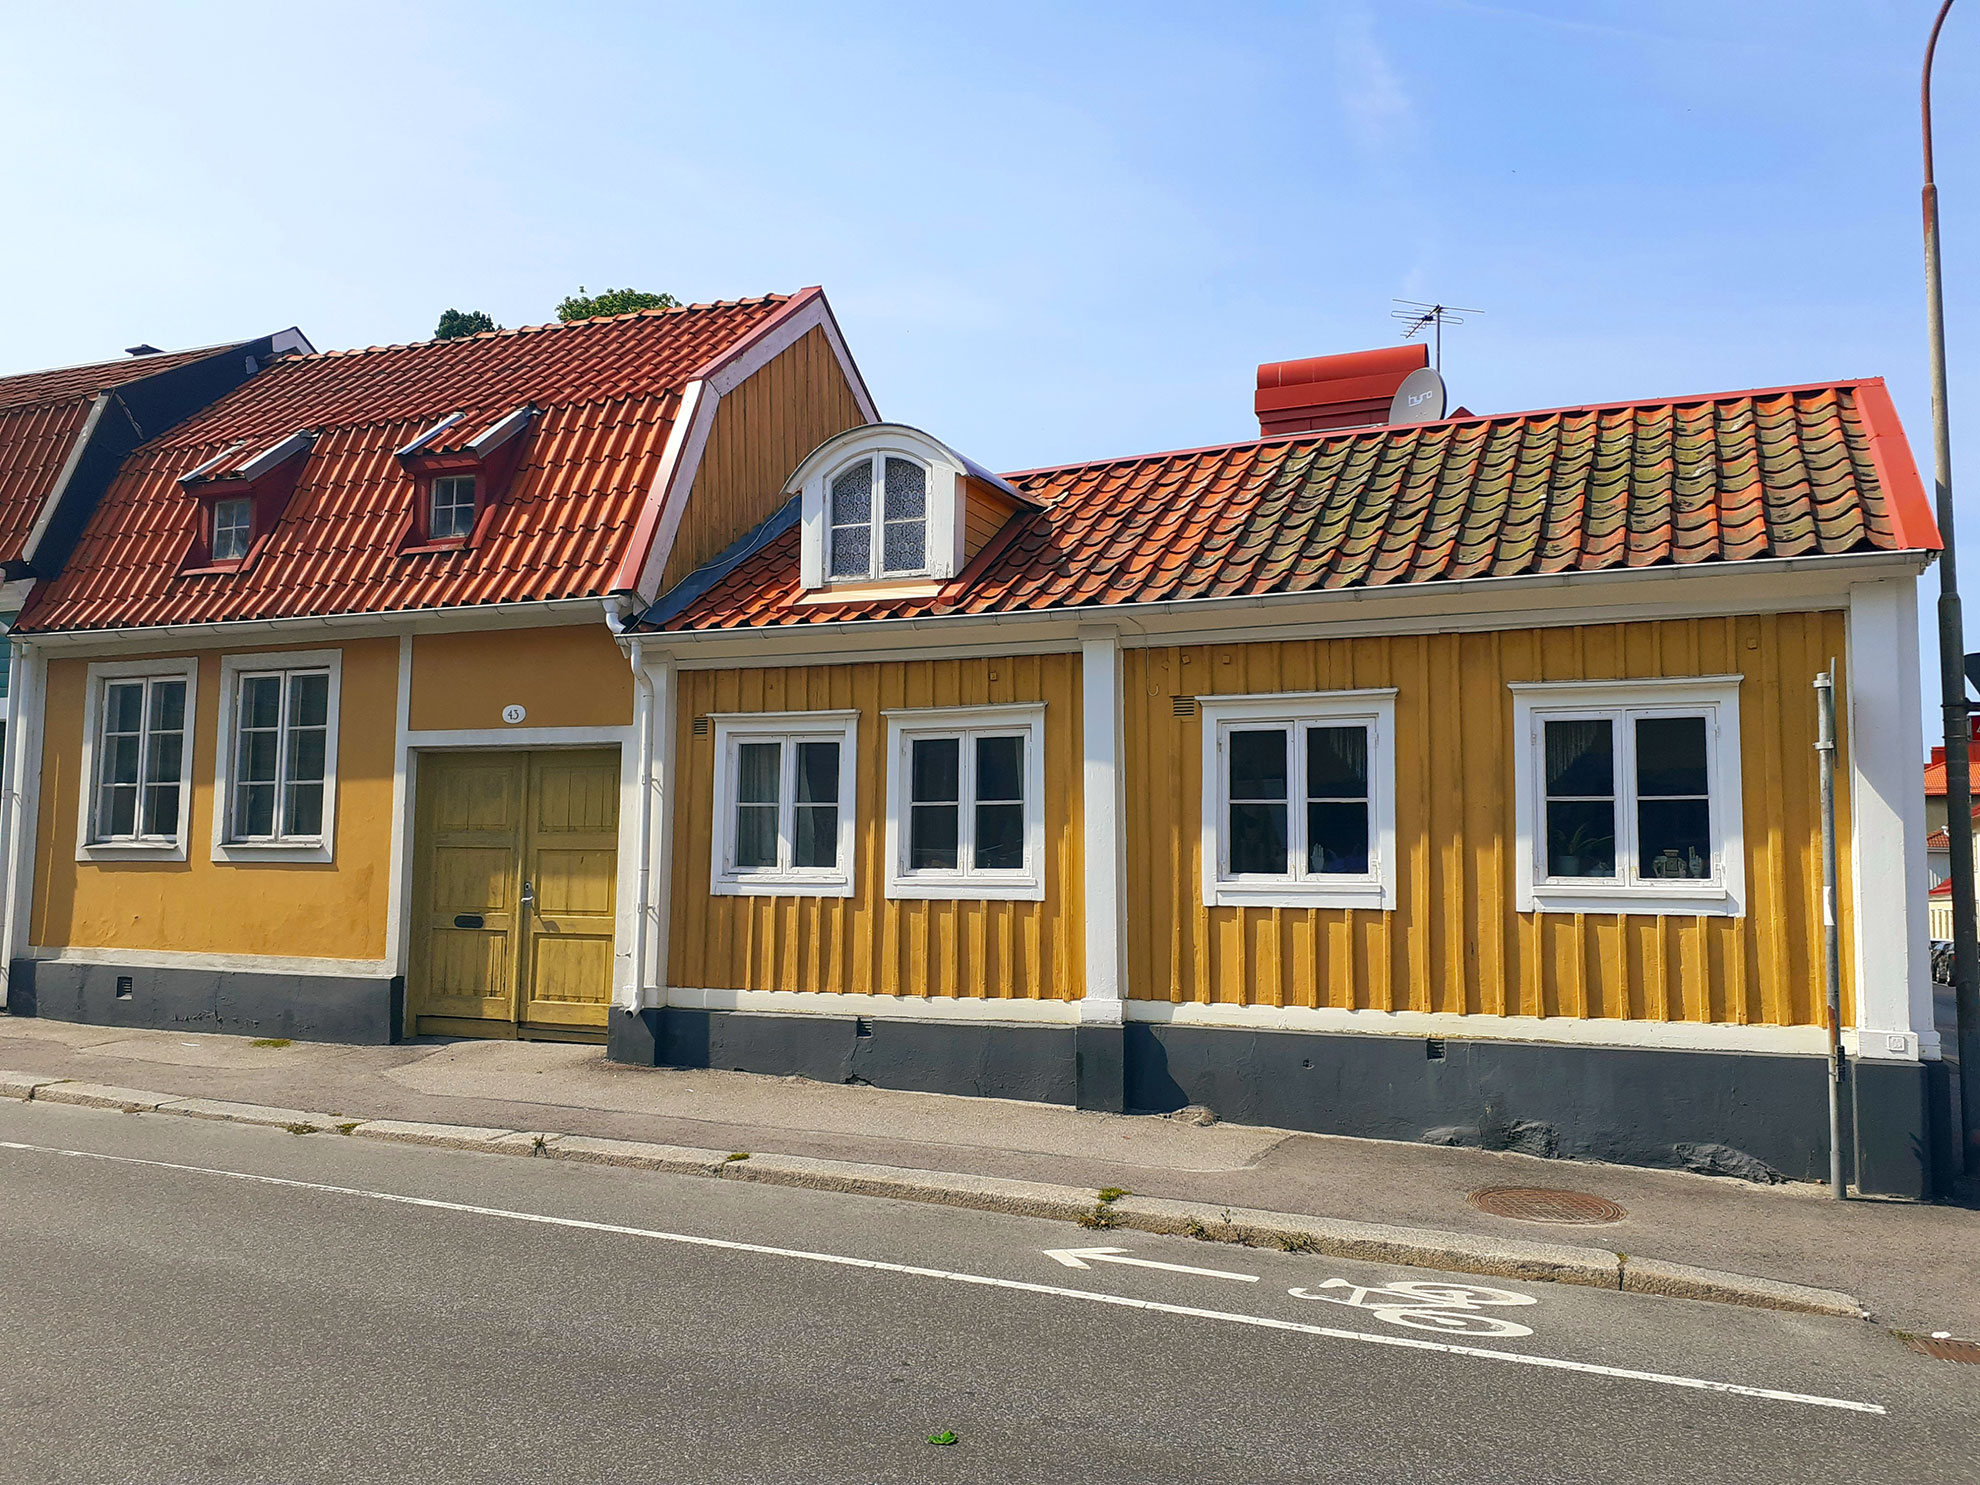 Karlshamn - Historische Häuser endlang des Radweges.